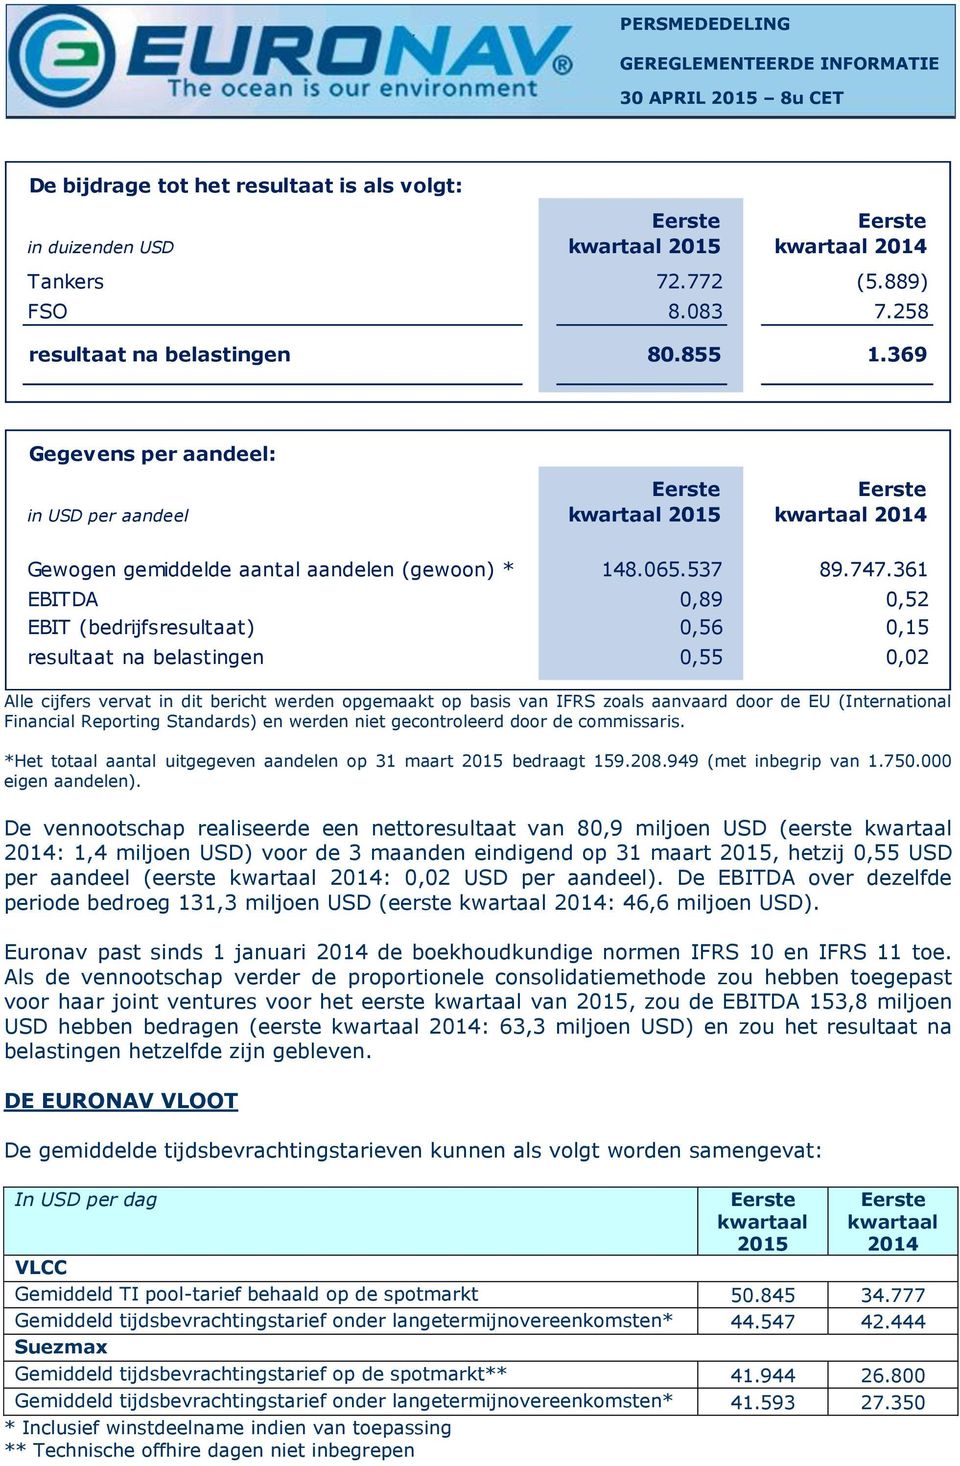 361 EBITDA 0,89 0,52 EBIT (bedrijfsresultaat) 0,56 0,15 resultaat na belastingen 0,55 0,02 Alle cijfers vervat in dit bericht werden opgemaakt op basis van IFRS zoals aanvaard door de EU